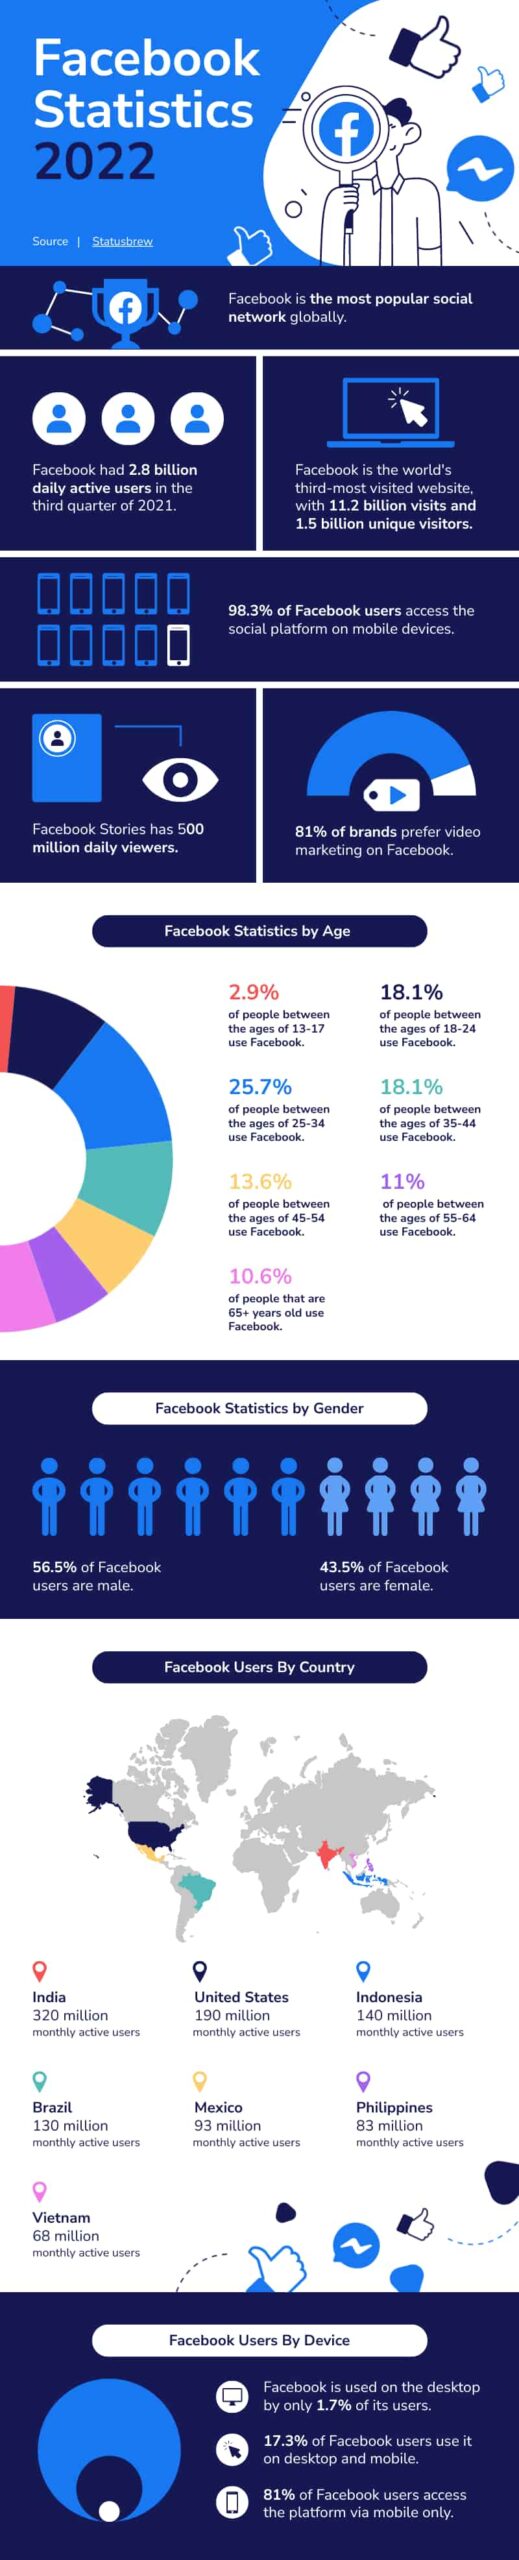 Facebook statistics pictogram